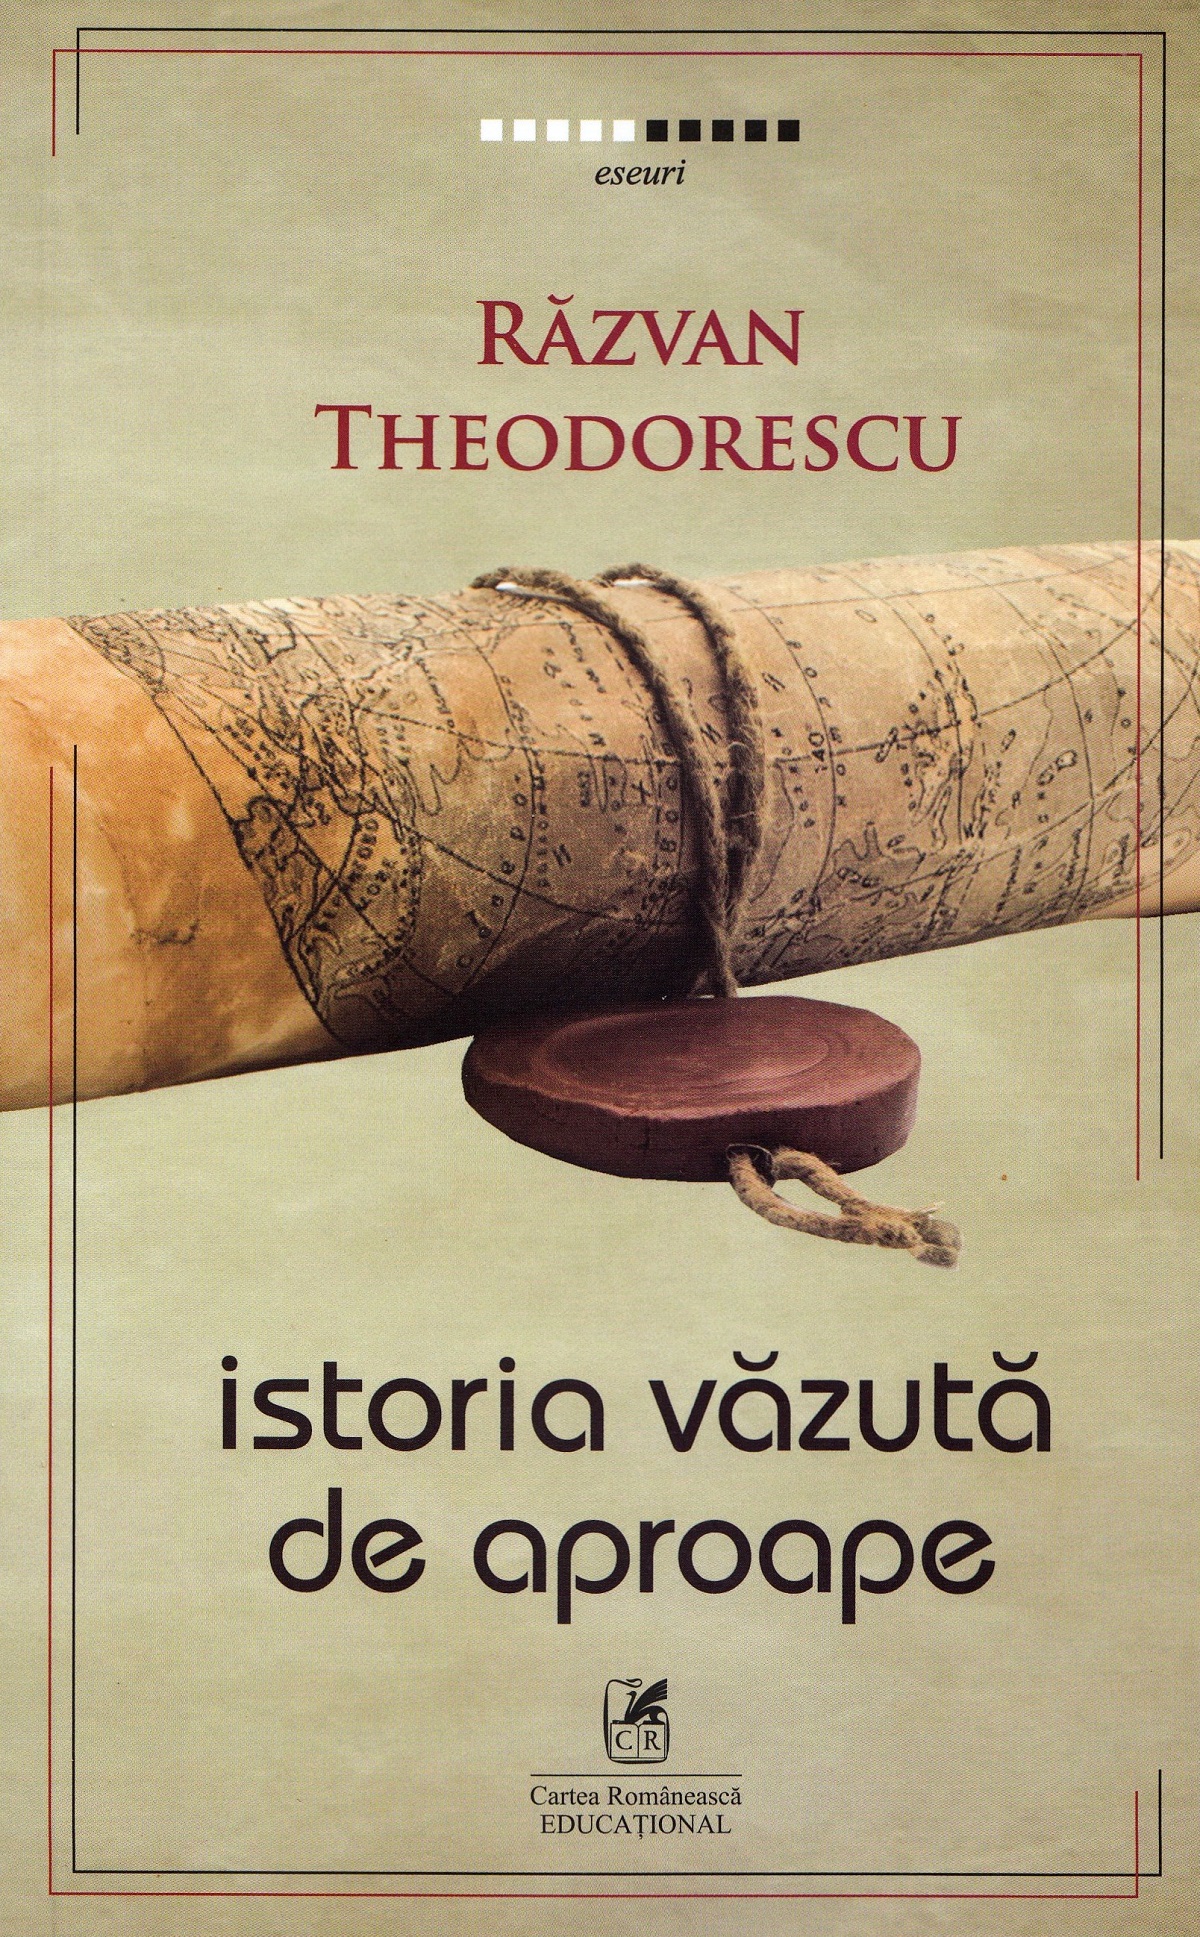 Istoria vazuta de aproape | Razvan Theodorescu Cartea Romaneasca educational poza bestsellers.ro